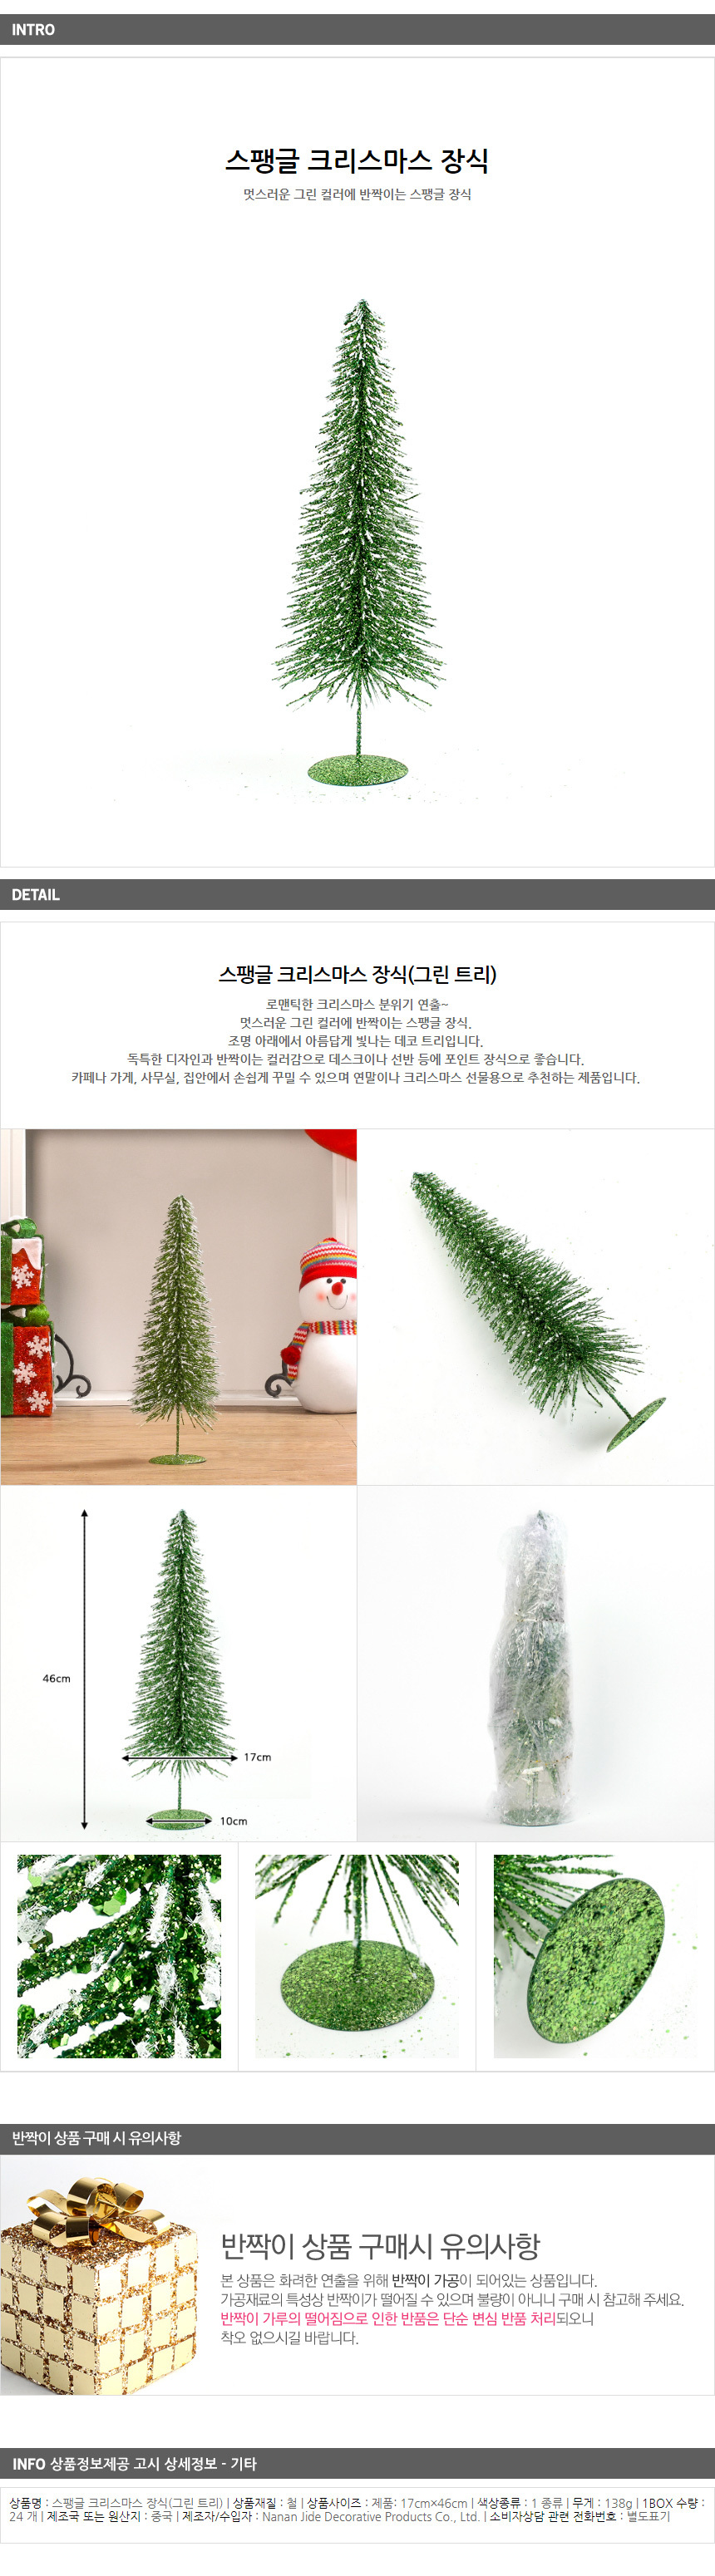 미니 이색트리 46cm 트리나무 크리스마스 데코소품